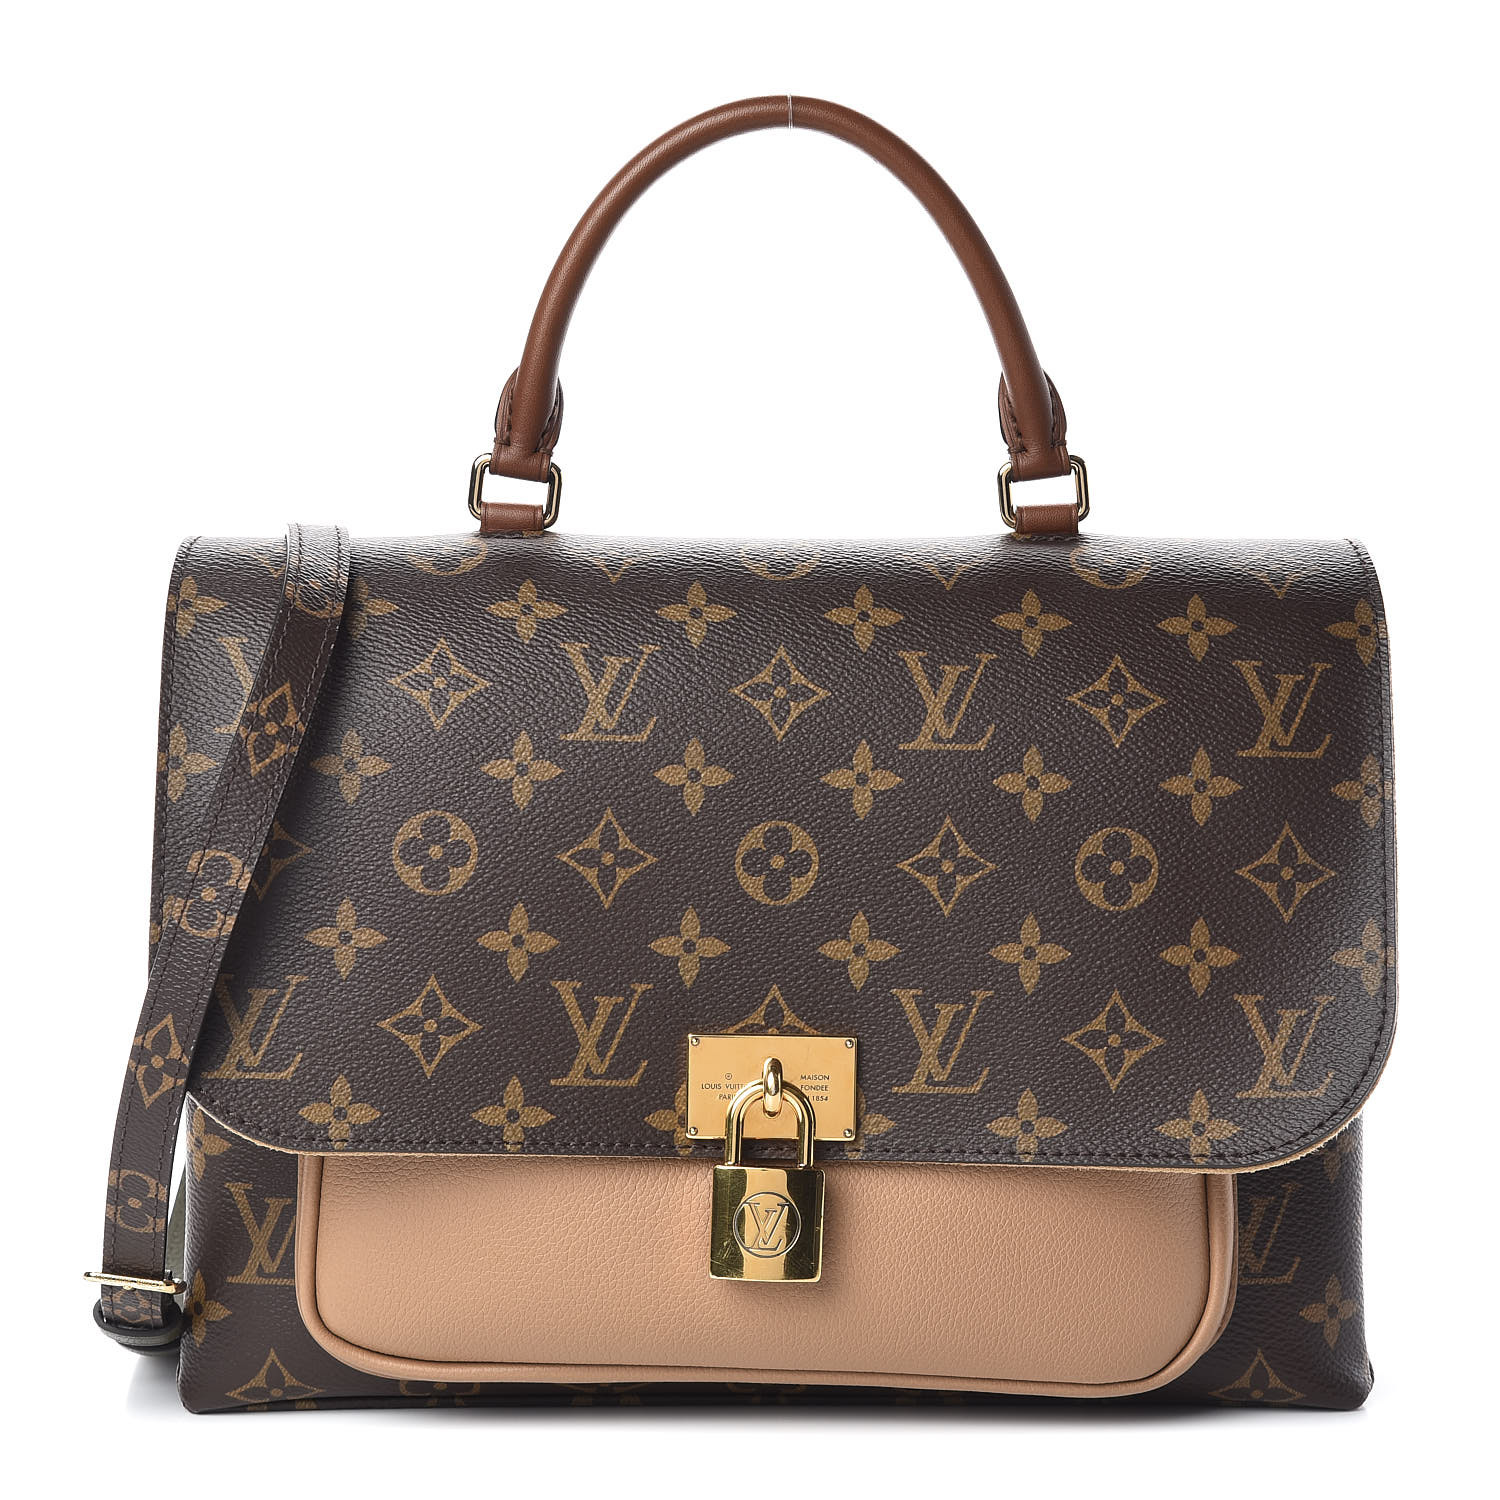 Unboxing Louis Vuitton ! The monogram confidential bandeau in